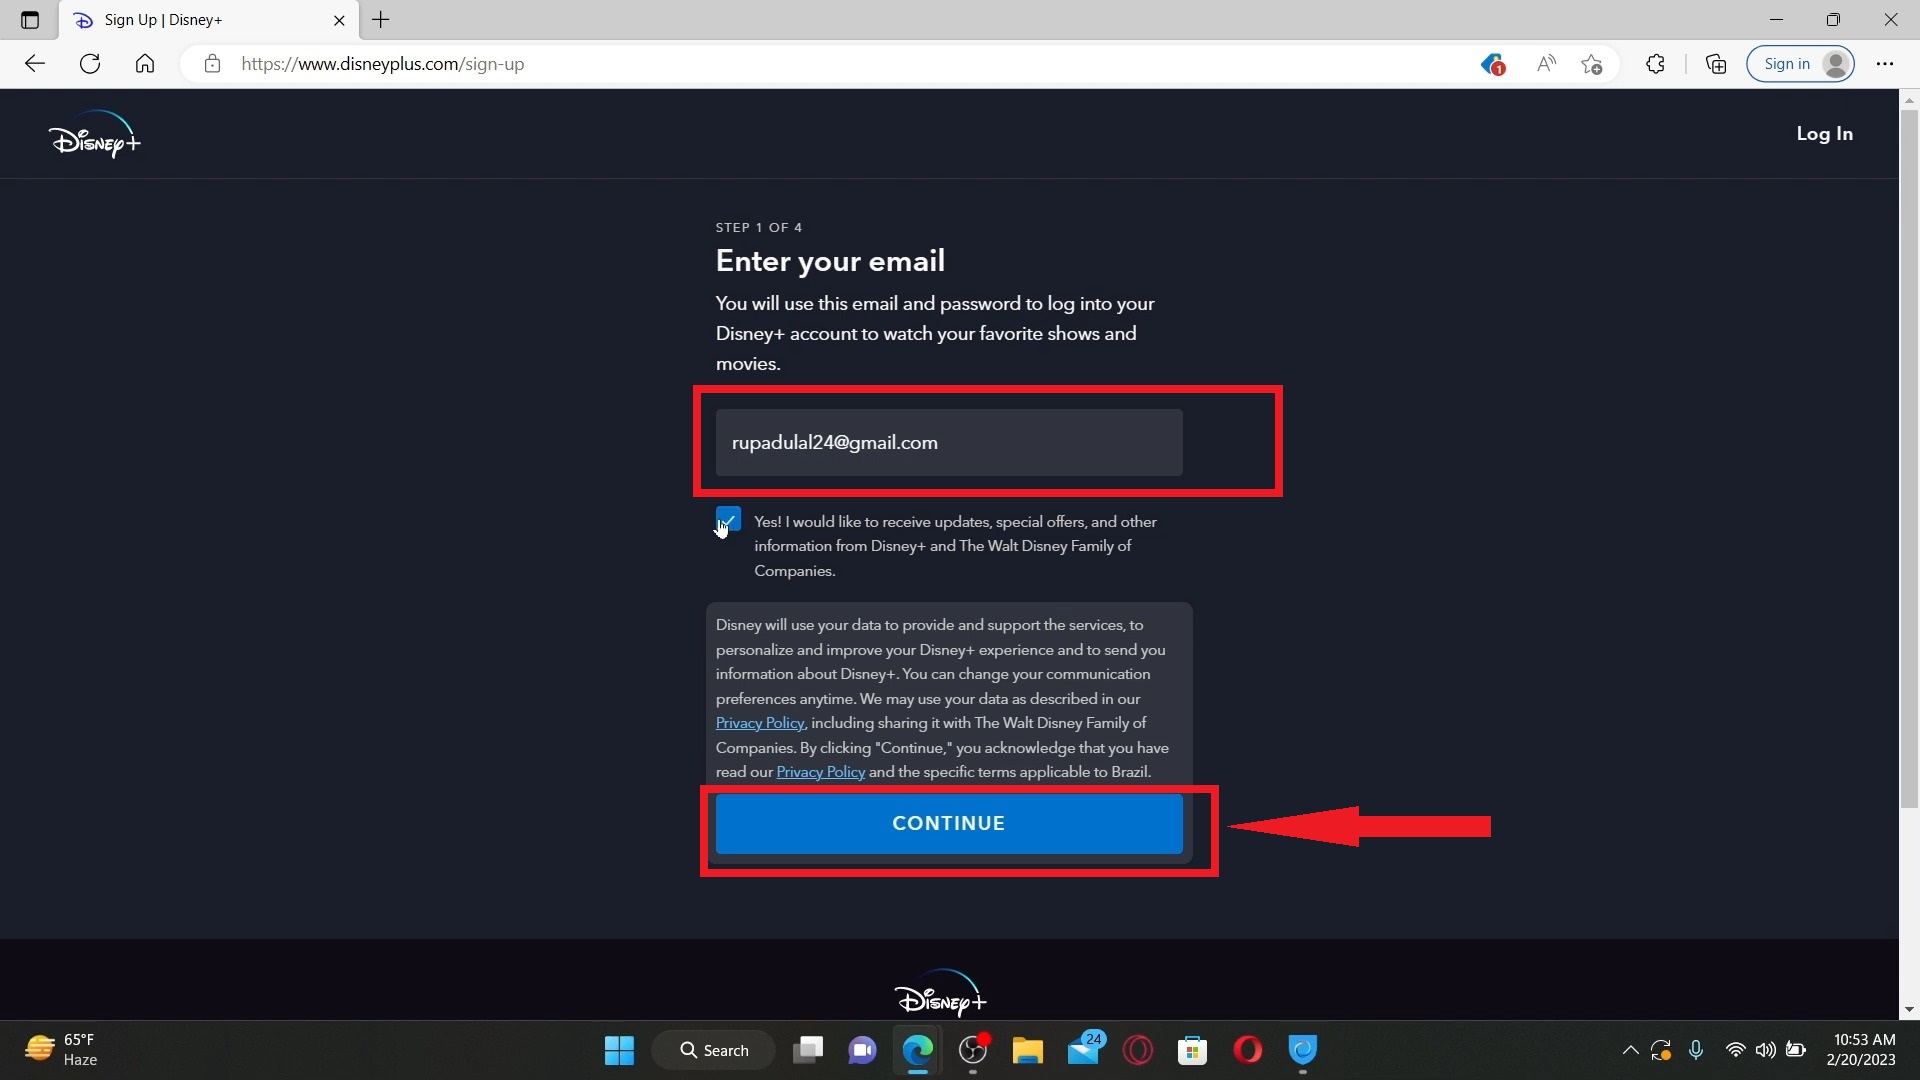 Enter emailand click continue